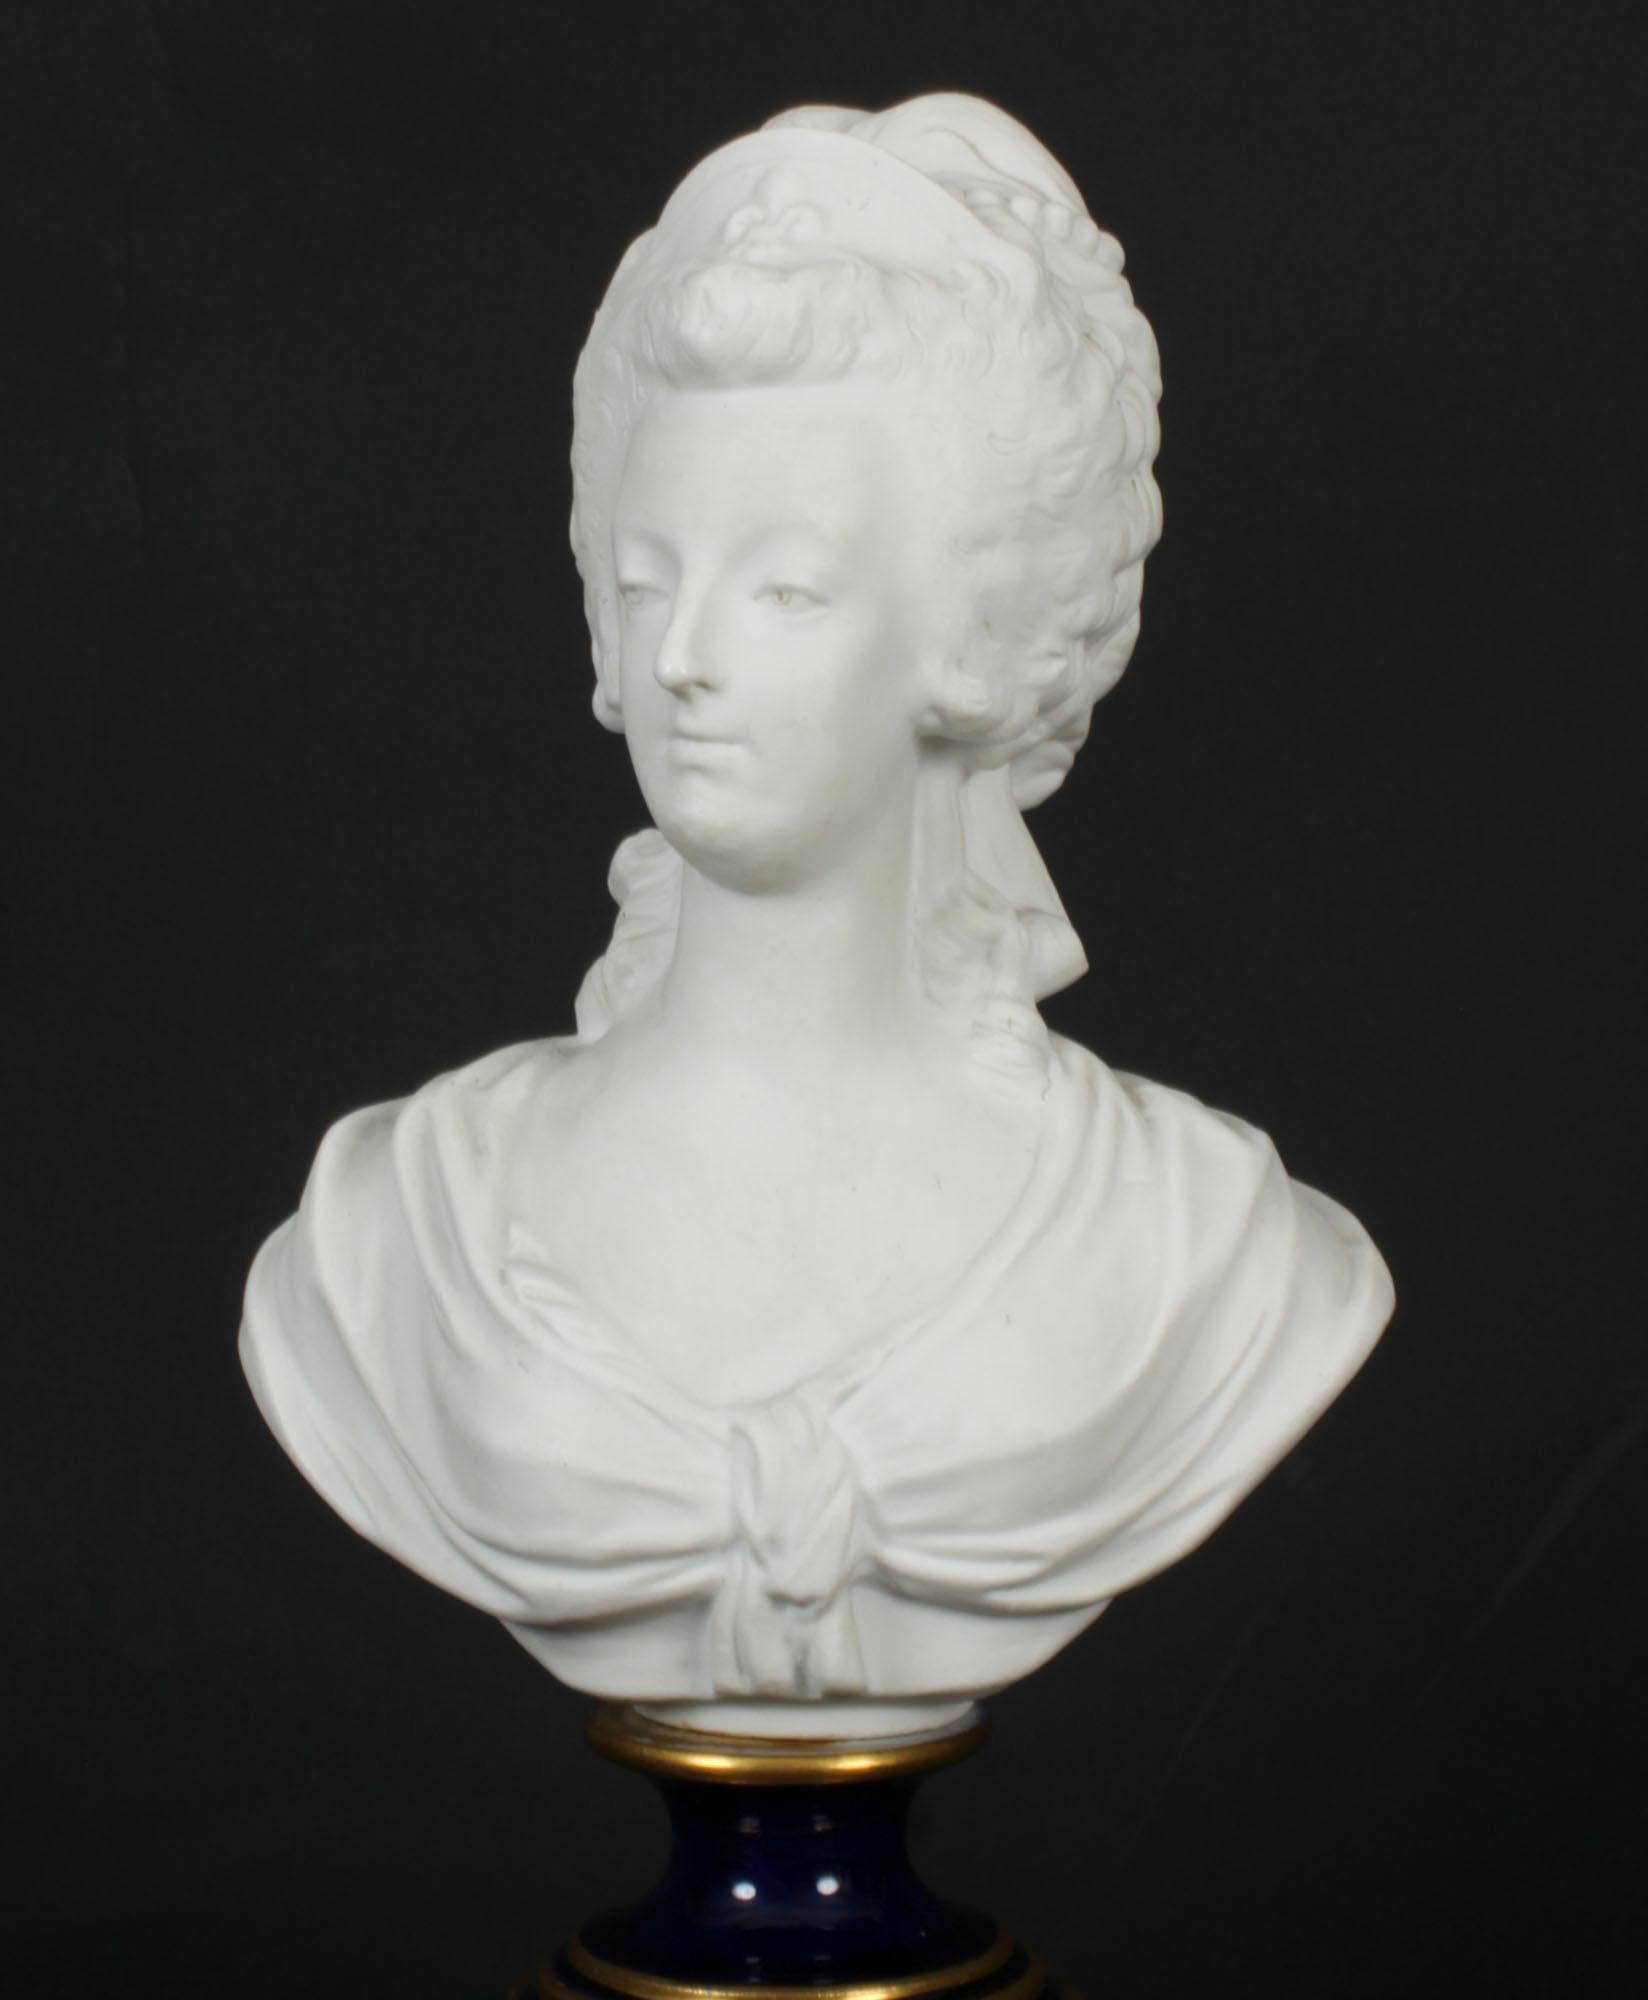 Il s'agit d'un fabuleux buste décoratif en porcelaine de Sèvres représentant Marie Antoinette, datant de CIRCA et portant la marque L.A.Sèvres peinte en bleu et entrelacée.

Il s'agit d'un élégant buste de Marie-Antoinette, reine de France et épouse